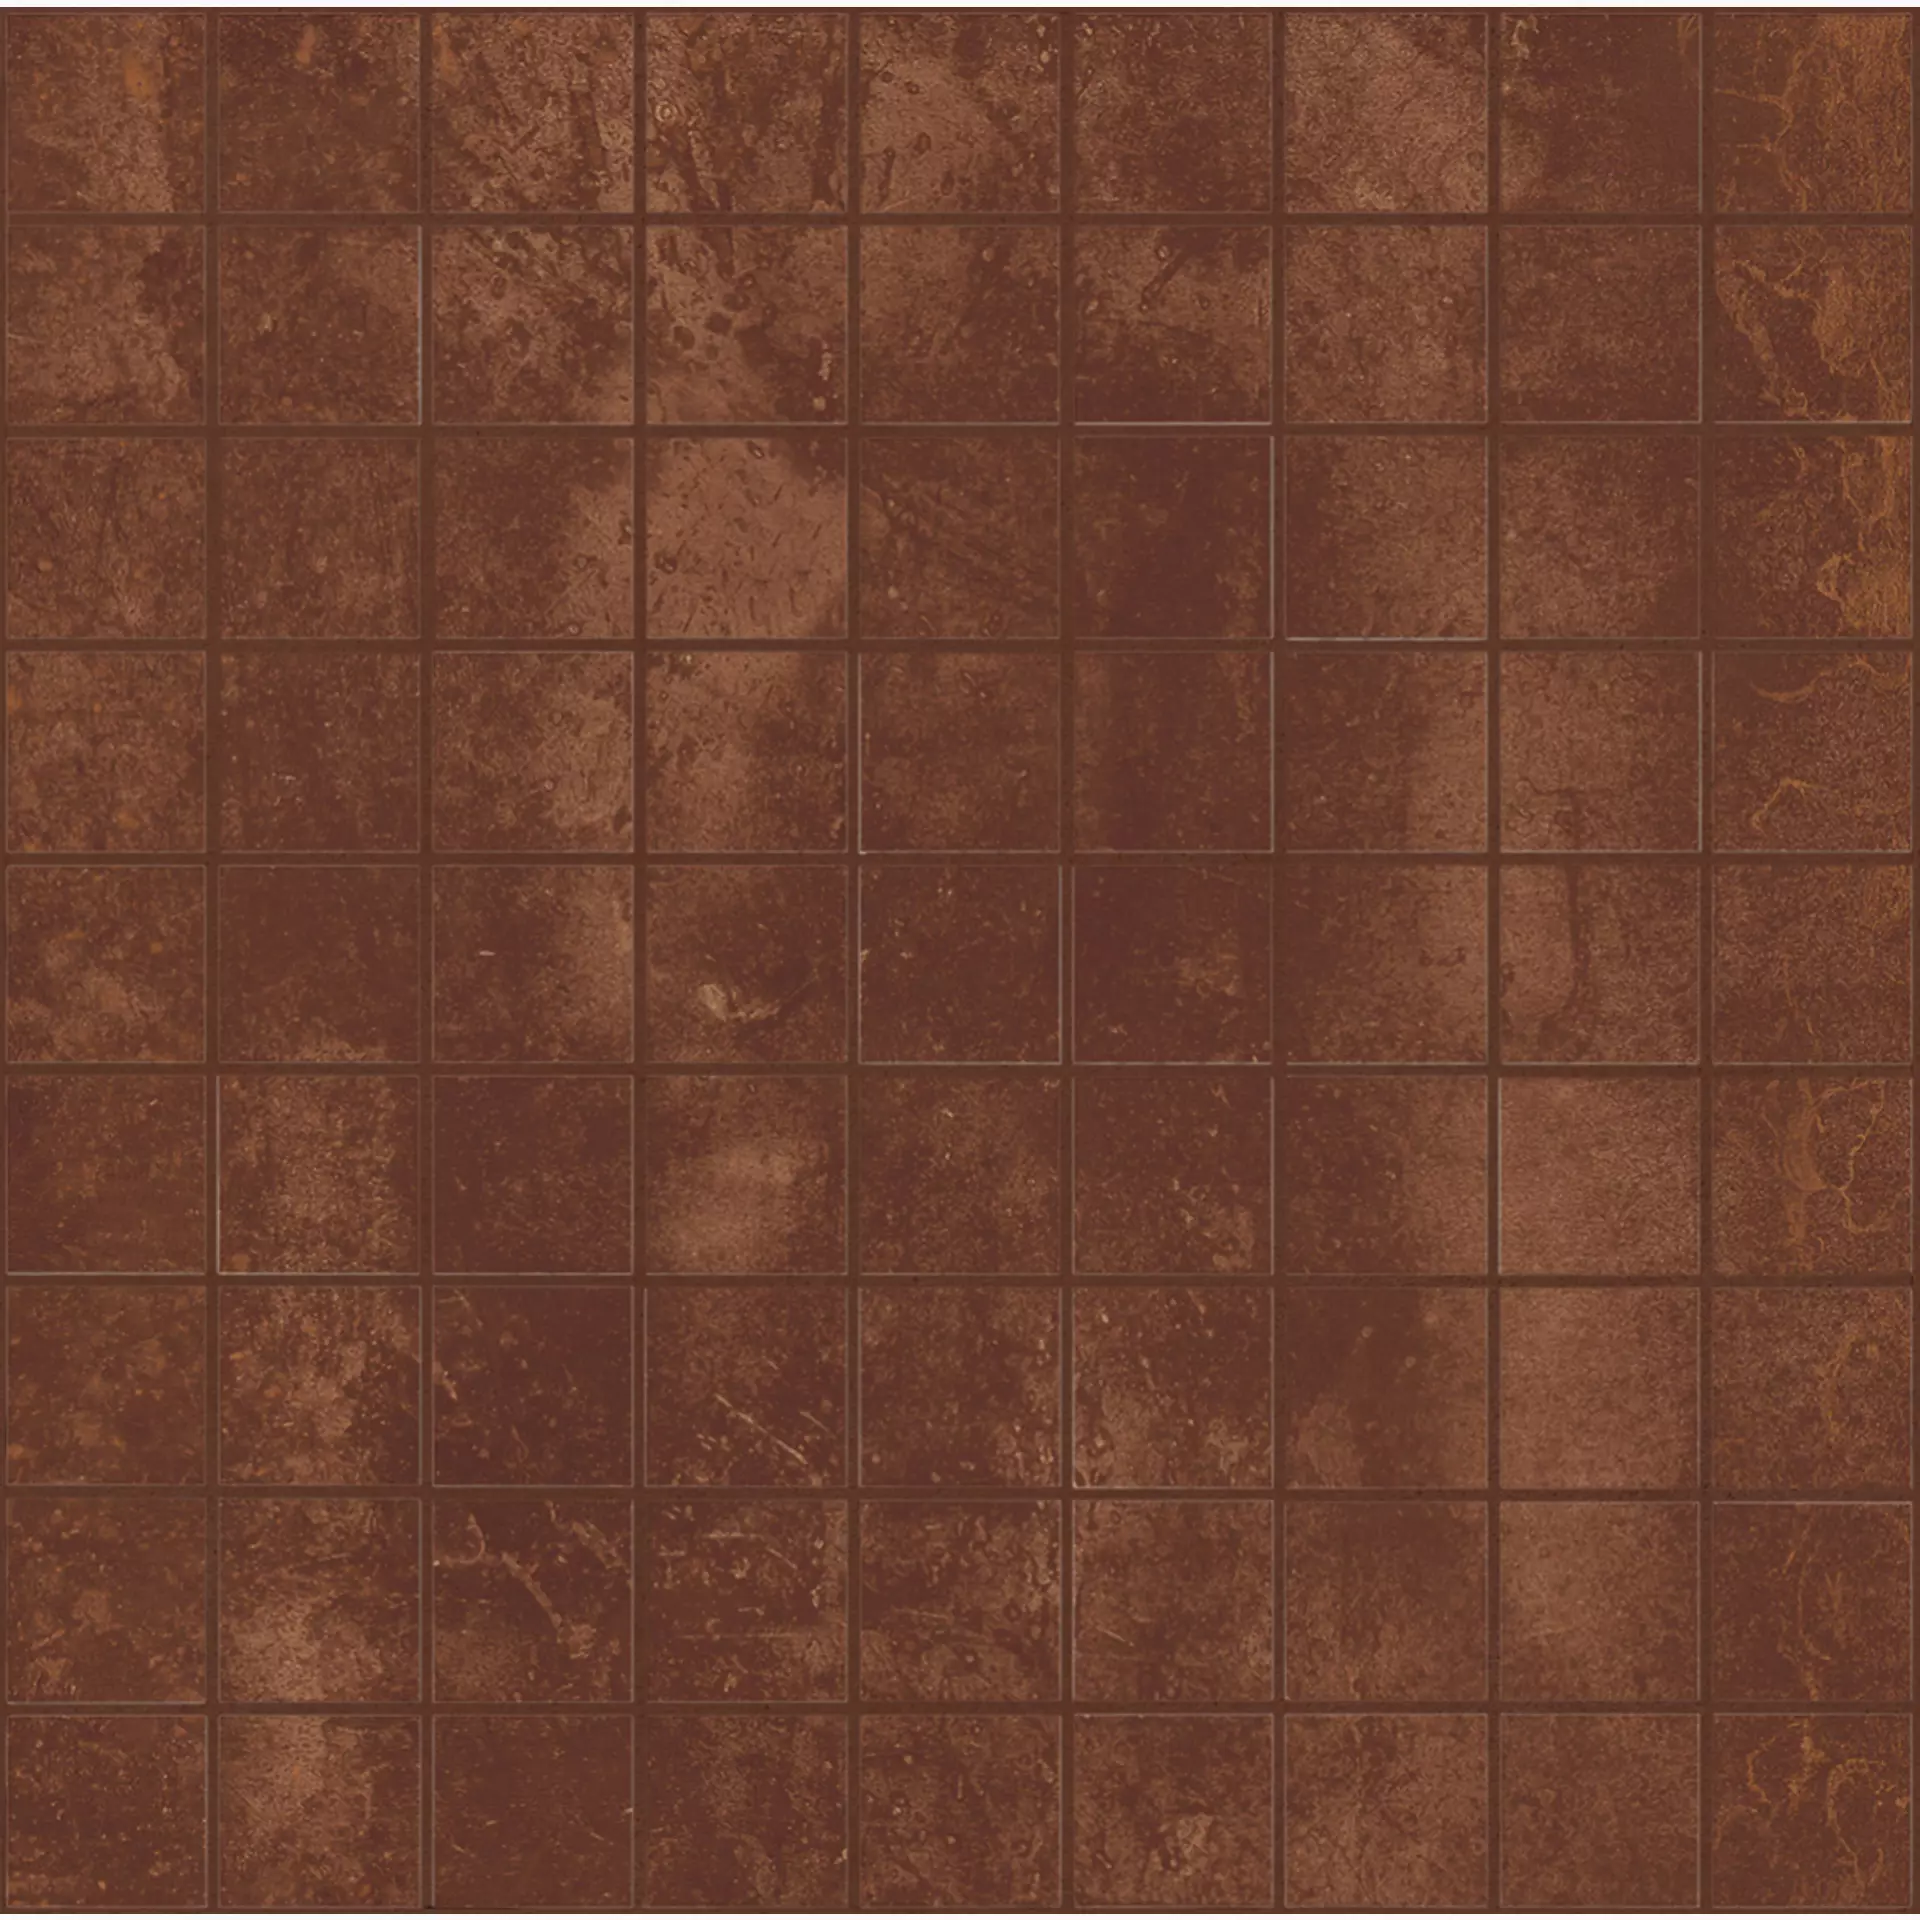 Bodenfliese,Wandfliese Marazzi Mineral Corten Naturale – Matt Corten M0MV matt natur 37,5x37,5cm Mosaik 10mm